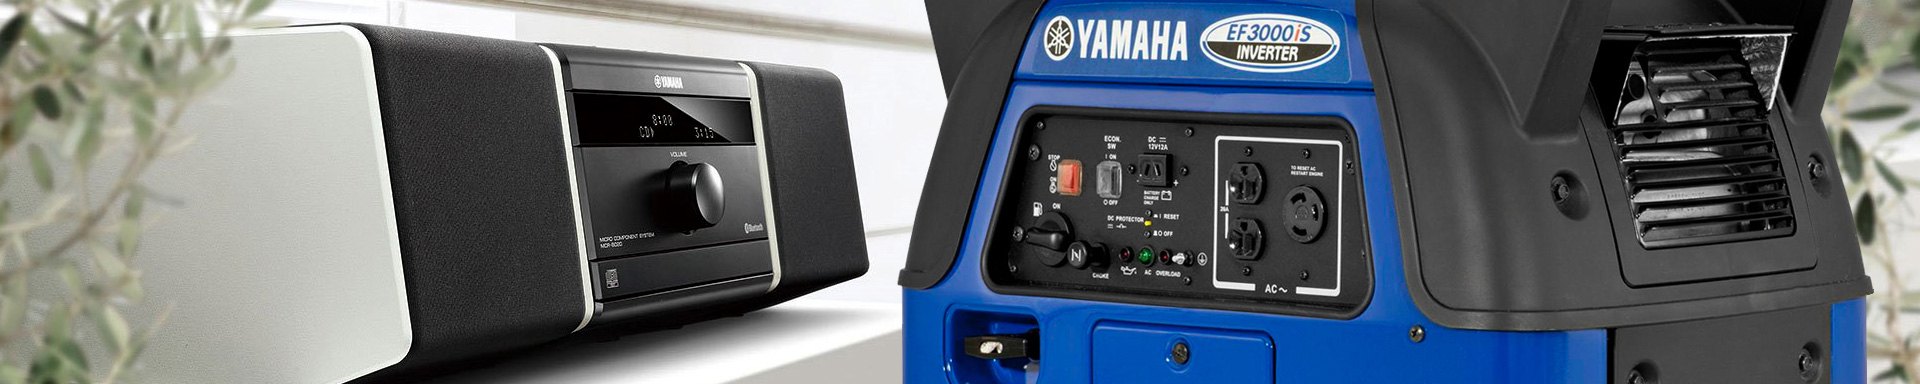 Yamaha Pressure Washers